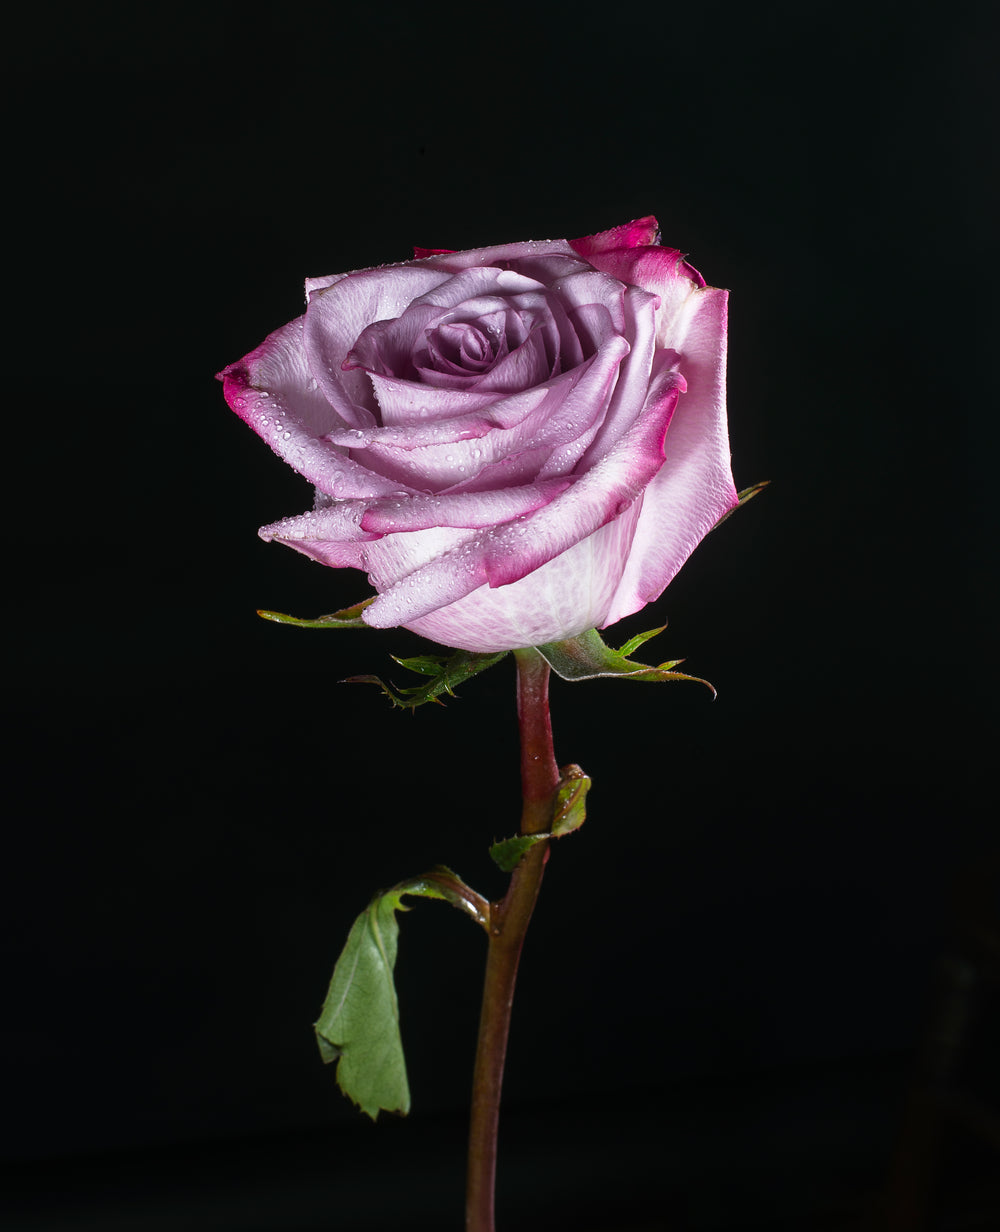 rosa roxa na escuridão